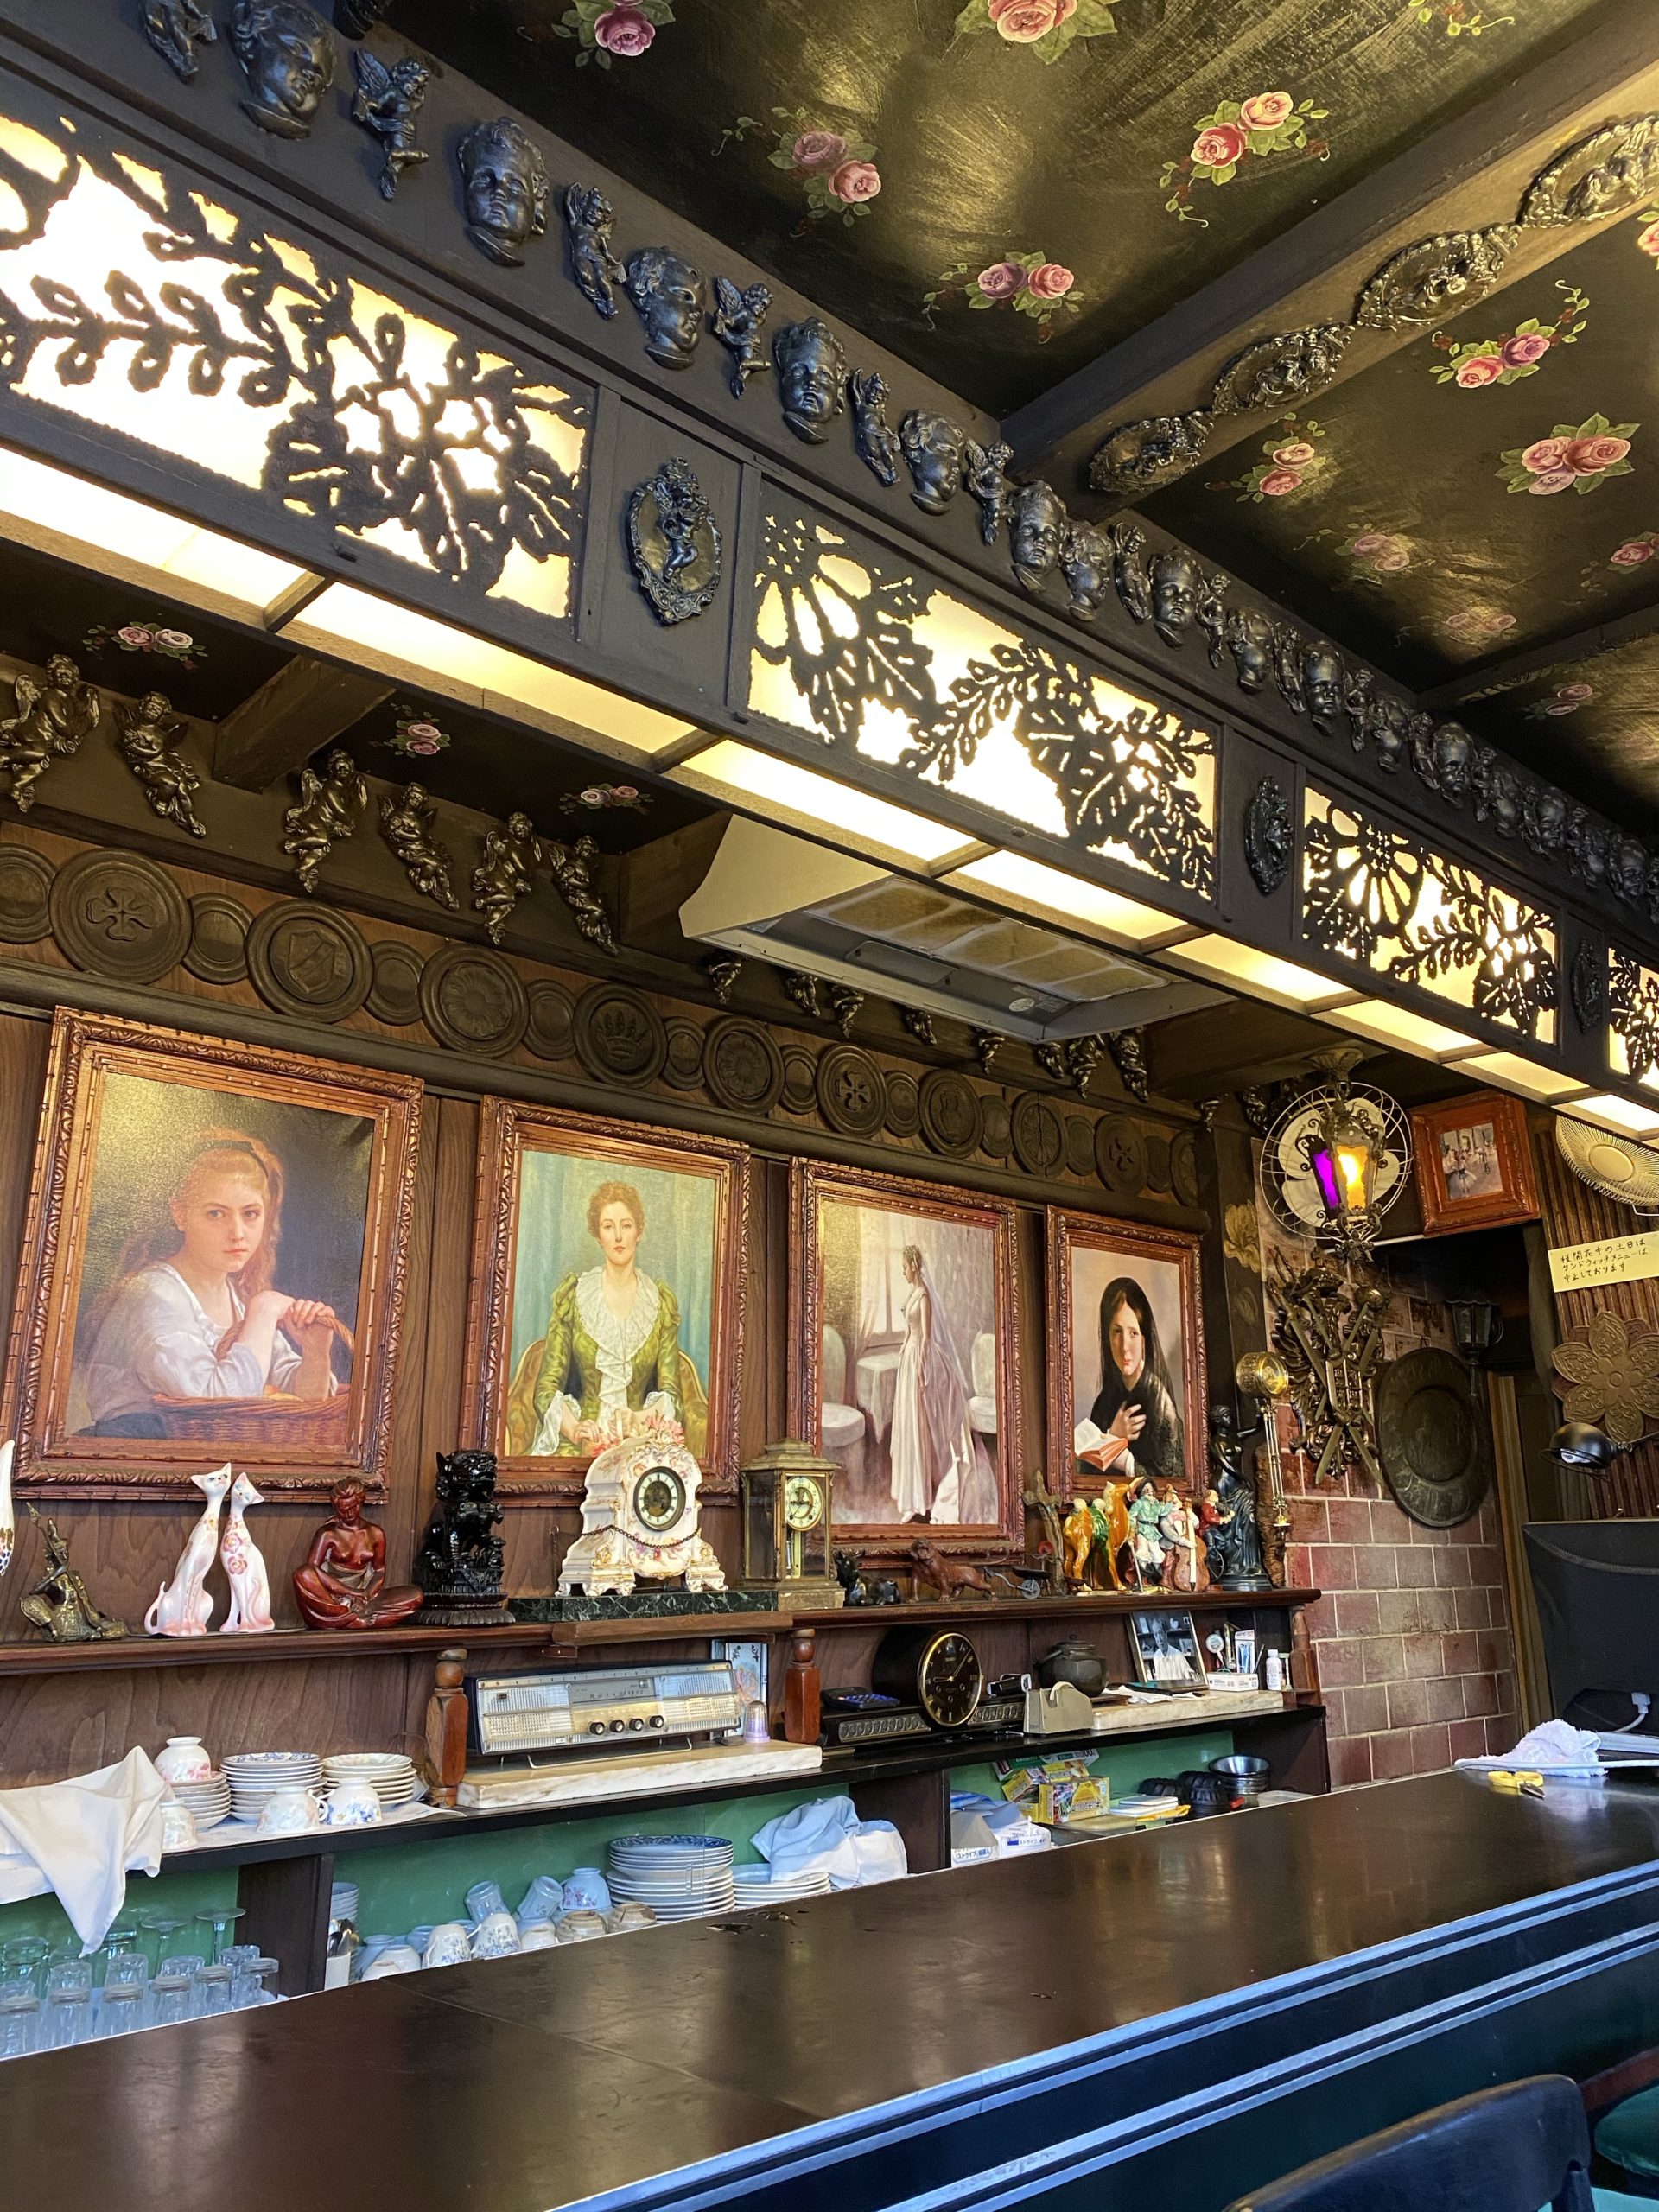 向島の人気純喫茶「カド」の店内画像